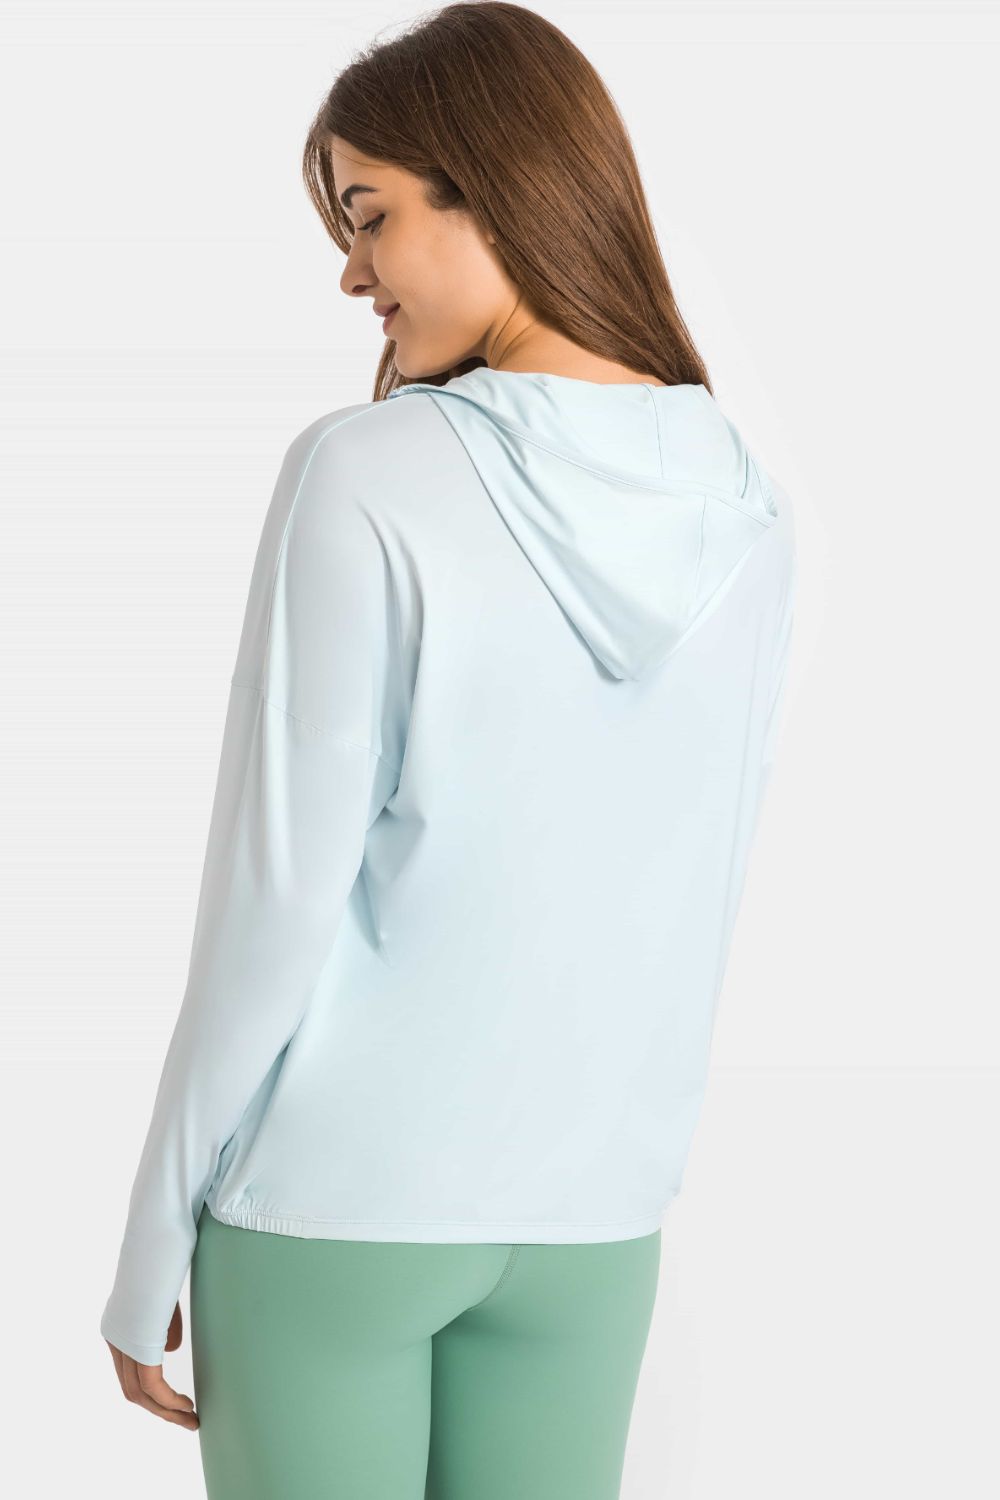 Zip Up Dropped Shoulder Hooded Sports Jacket - DromedarShop.com Online Boutique